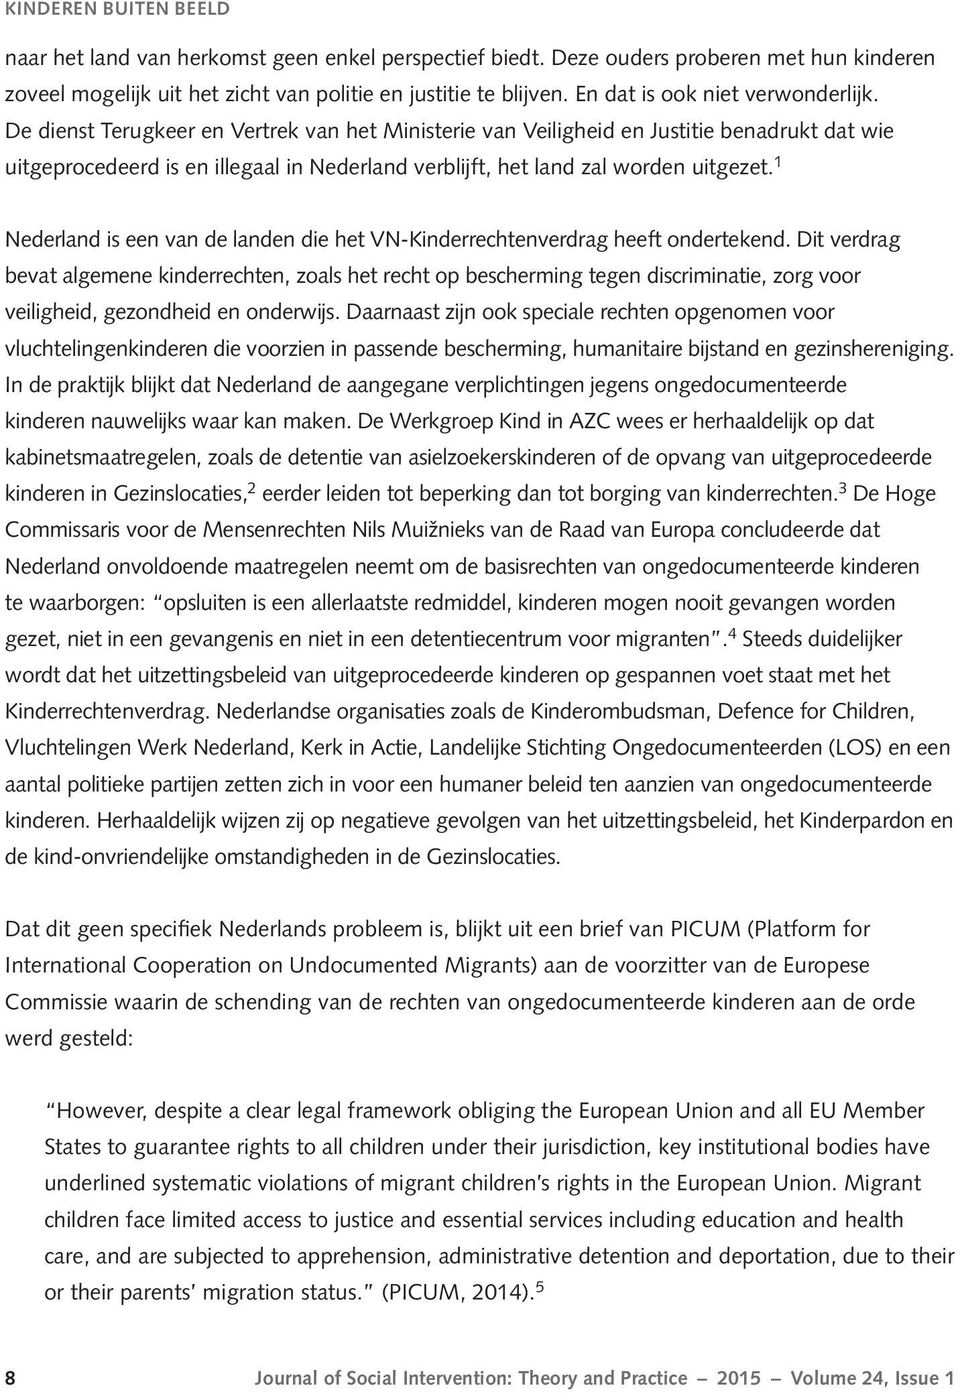 De dienst Terugkeer en Vertrek van het Ministerie van Veiligheid en Justitie benadrukt dat wie uitgeprocedeerd is en illegaal in Nederland verblijft, het land zal worden uitgezet.